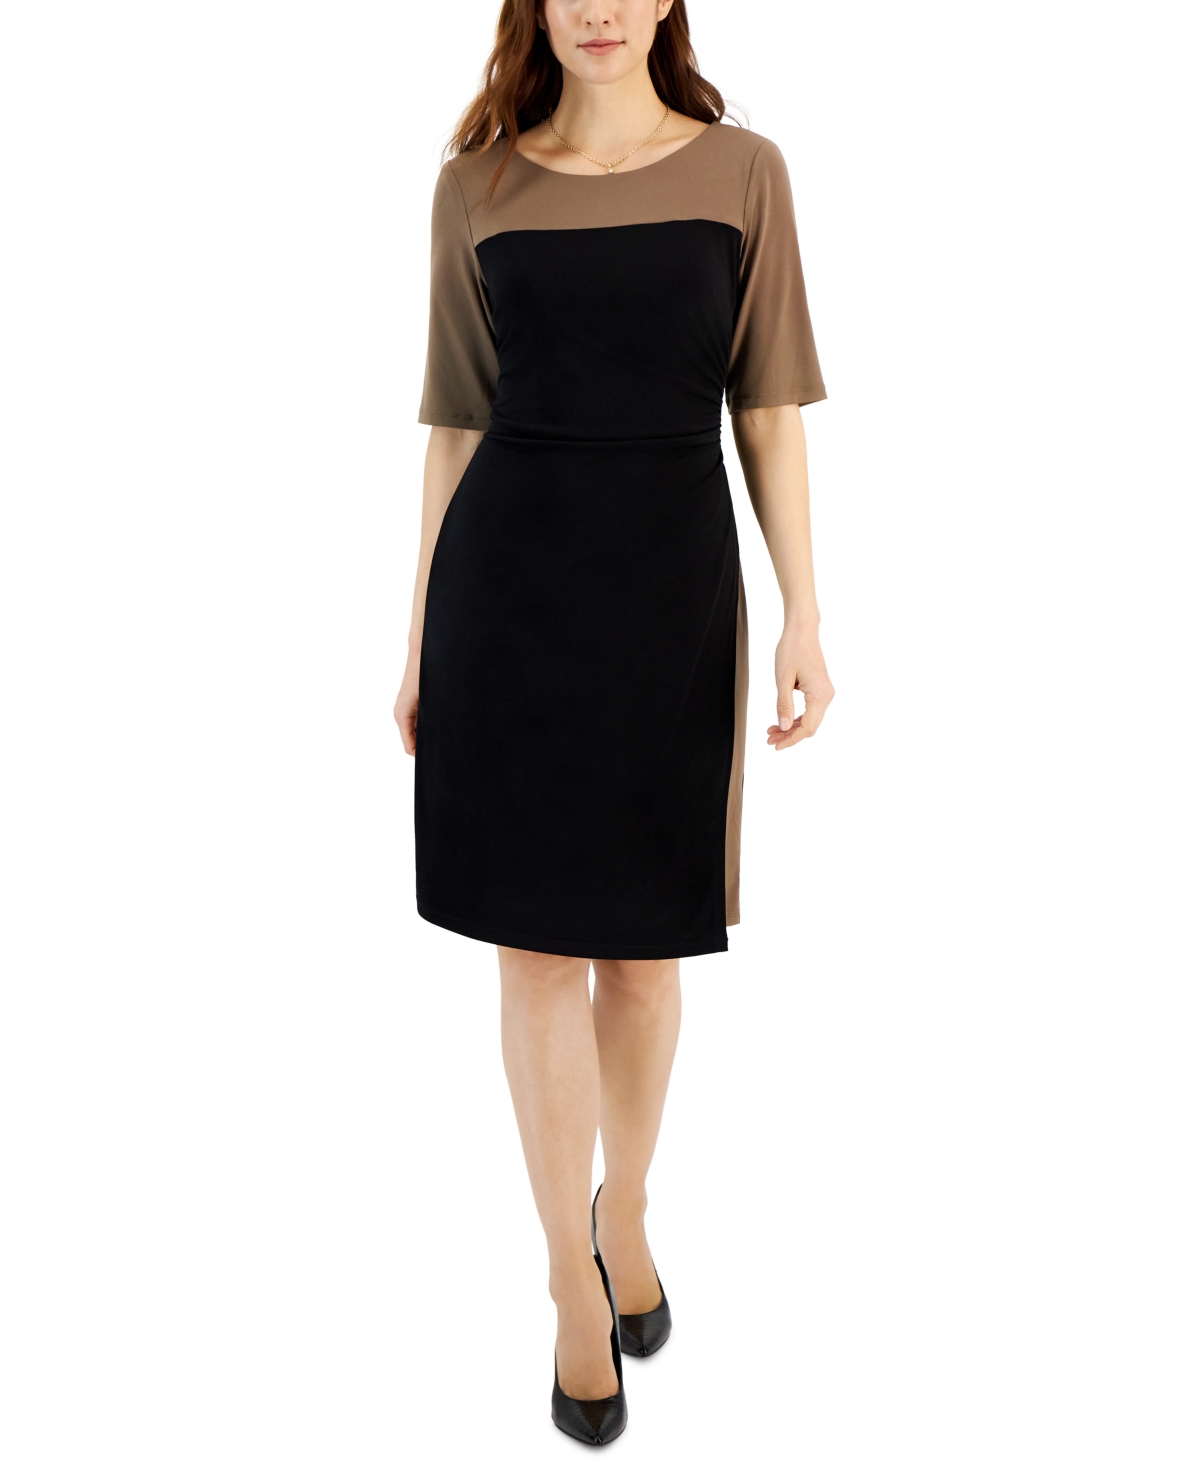 Women's Colorblocked Elbow-Sleeve Bateau-Neck Dress - DK Khaki/Black